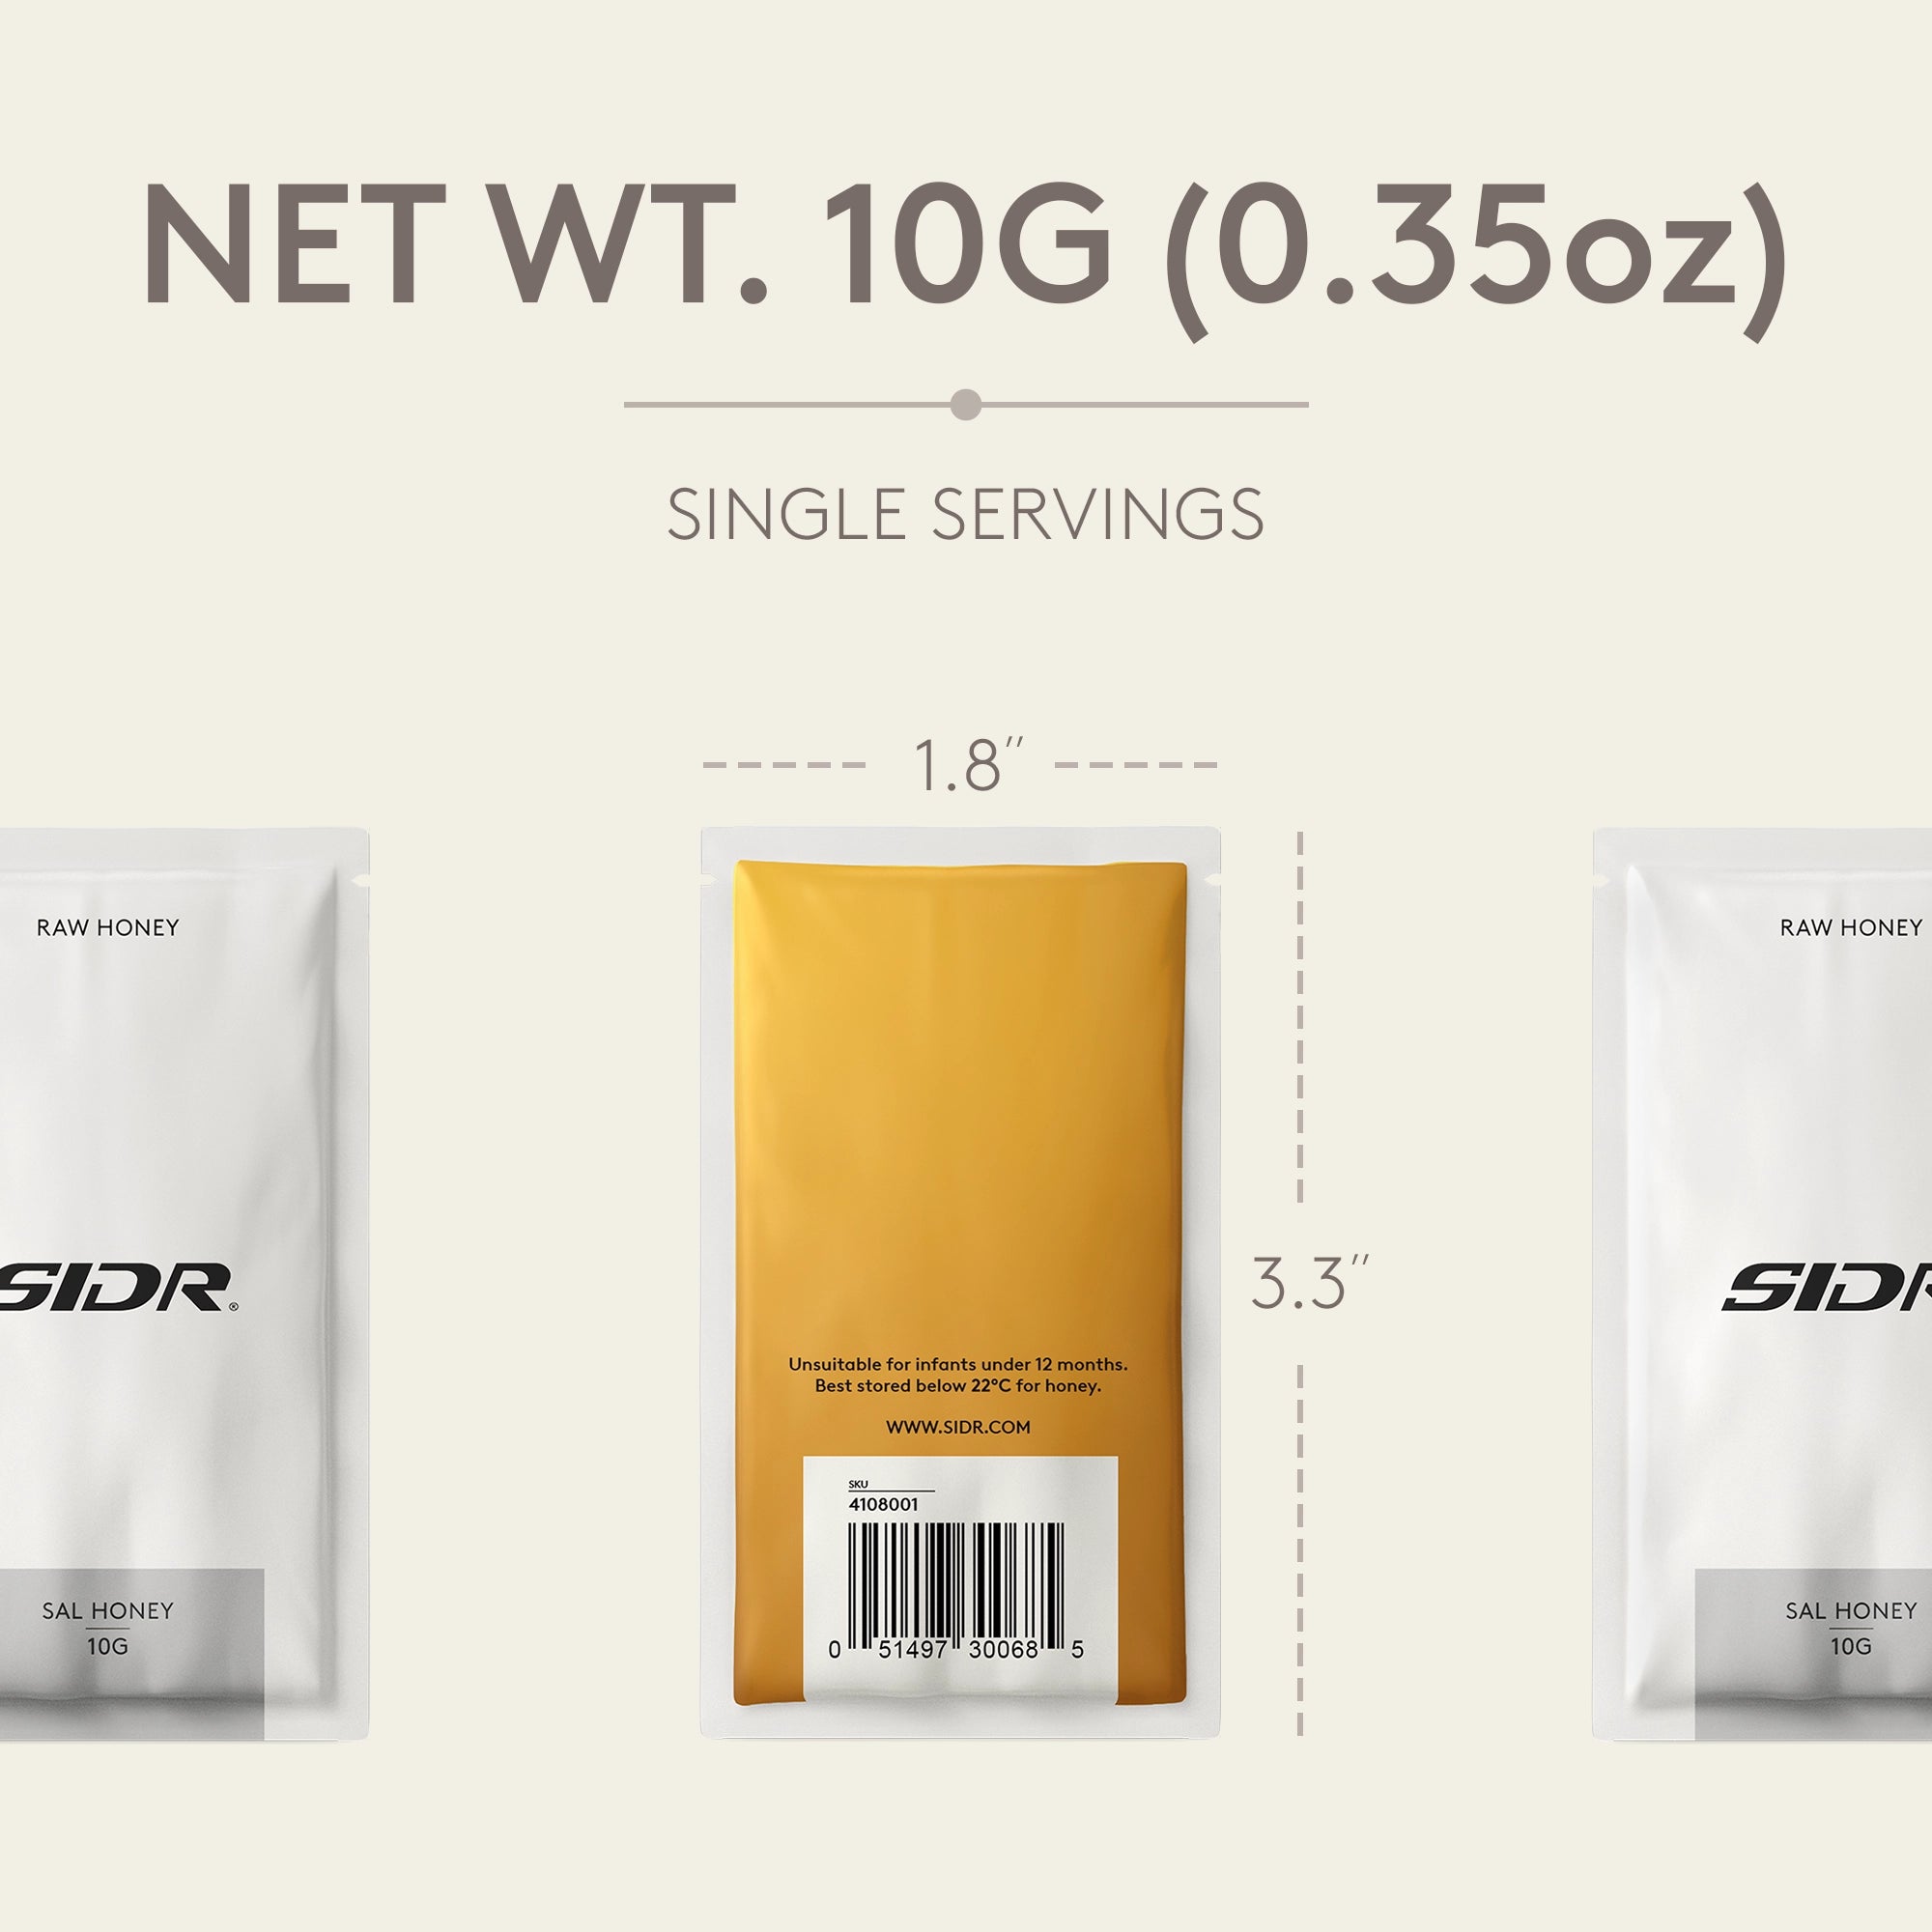 sal honey packet net weight